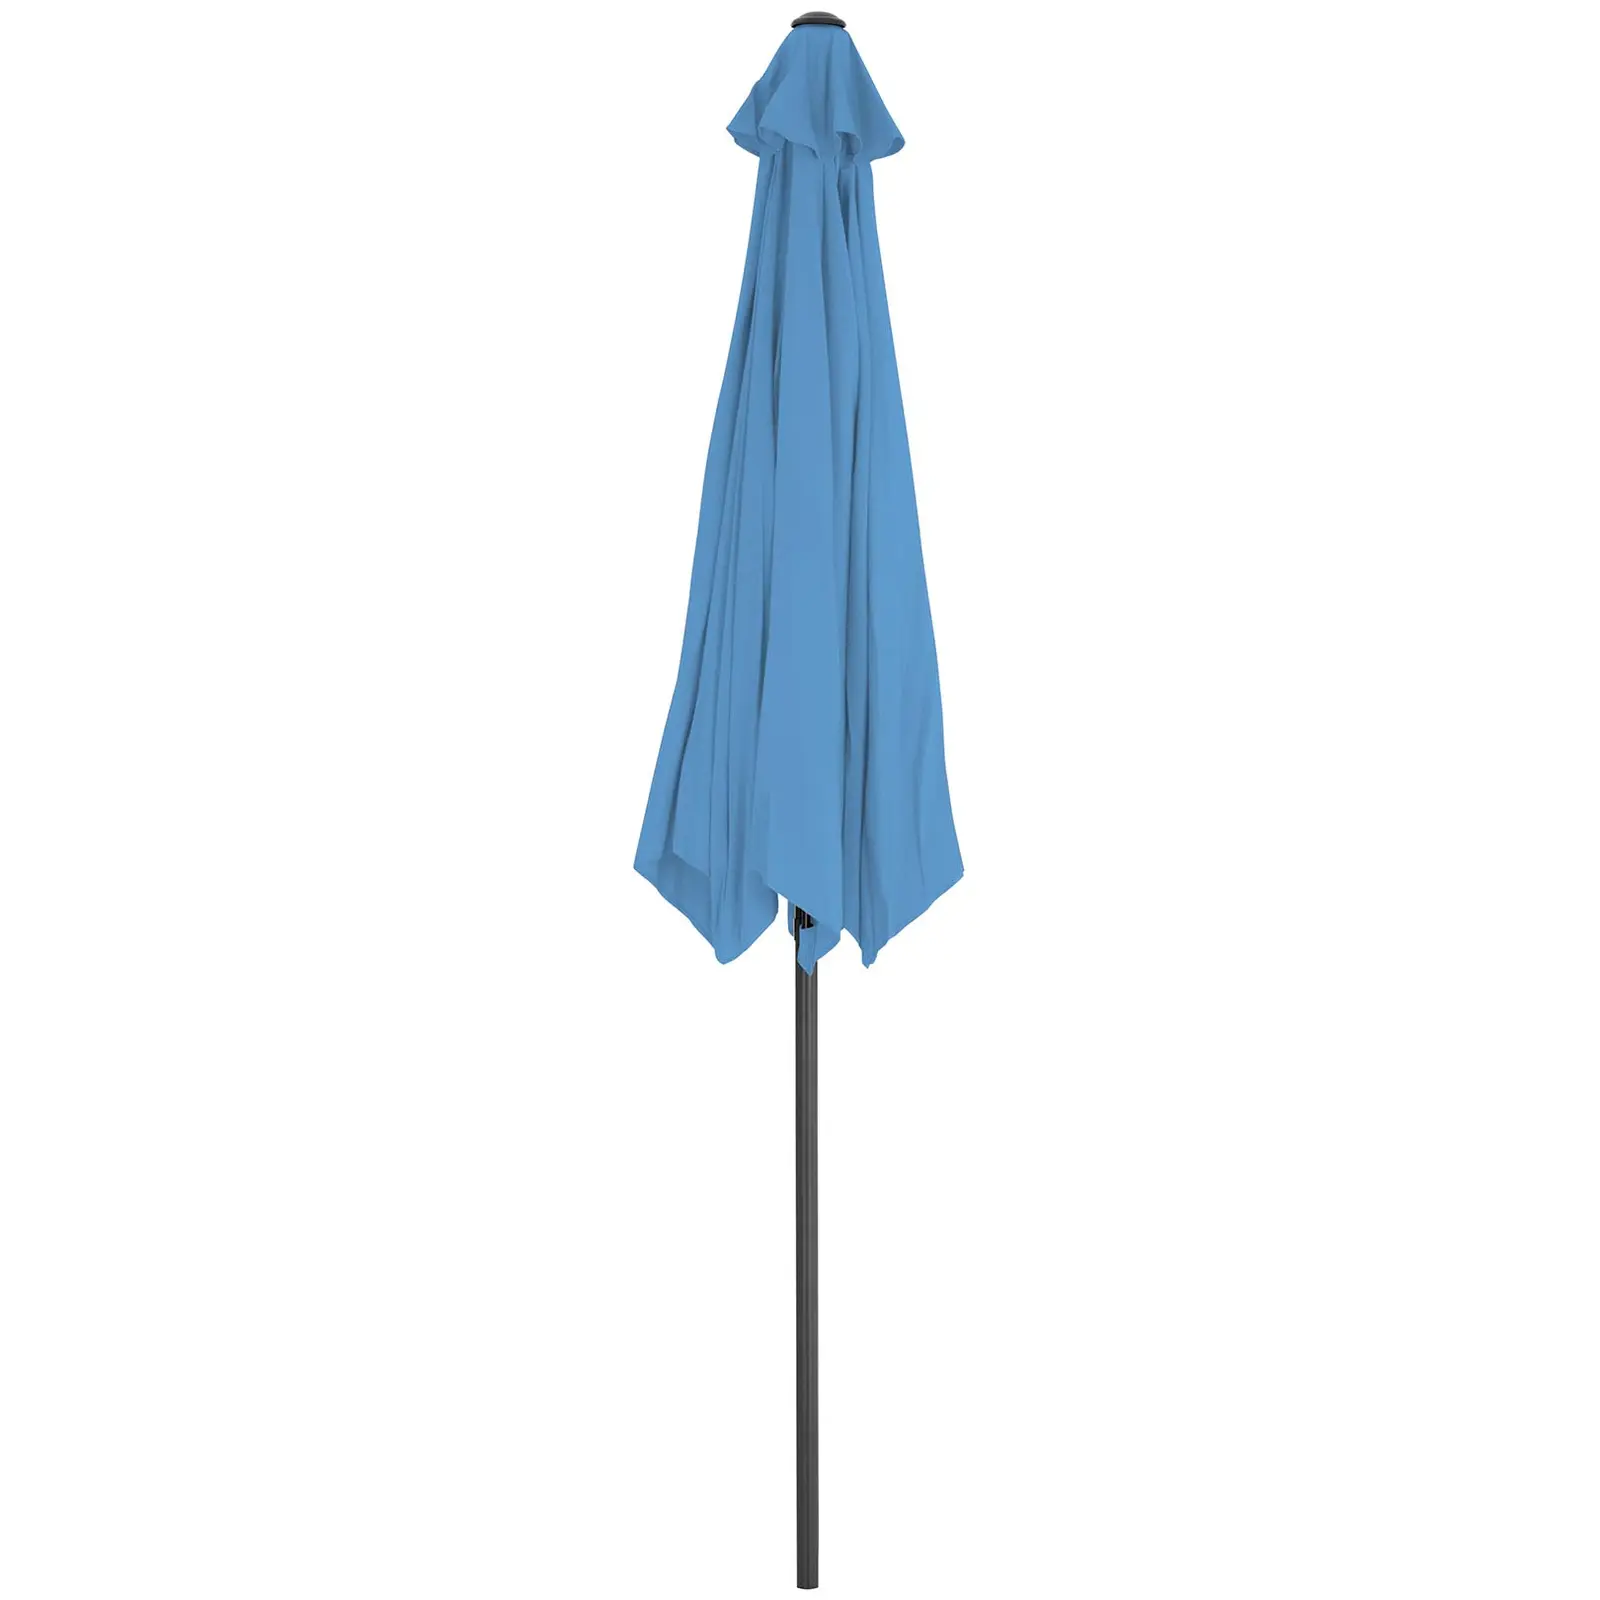 Parasol de terrasse – Bleu – Hexagonale – Ø 300 cm – Inclinable